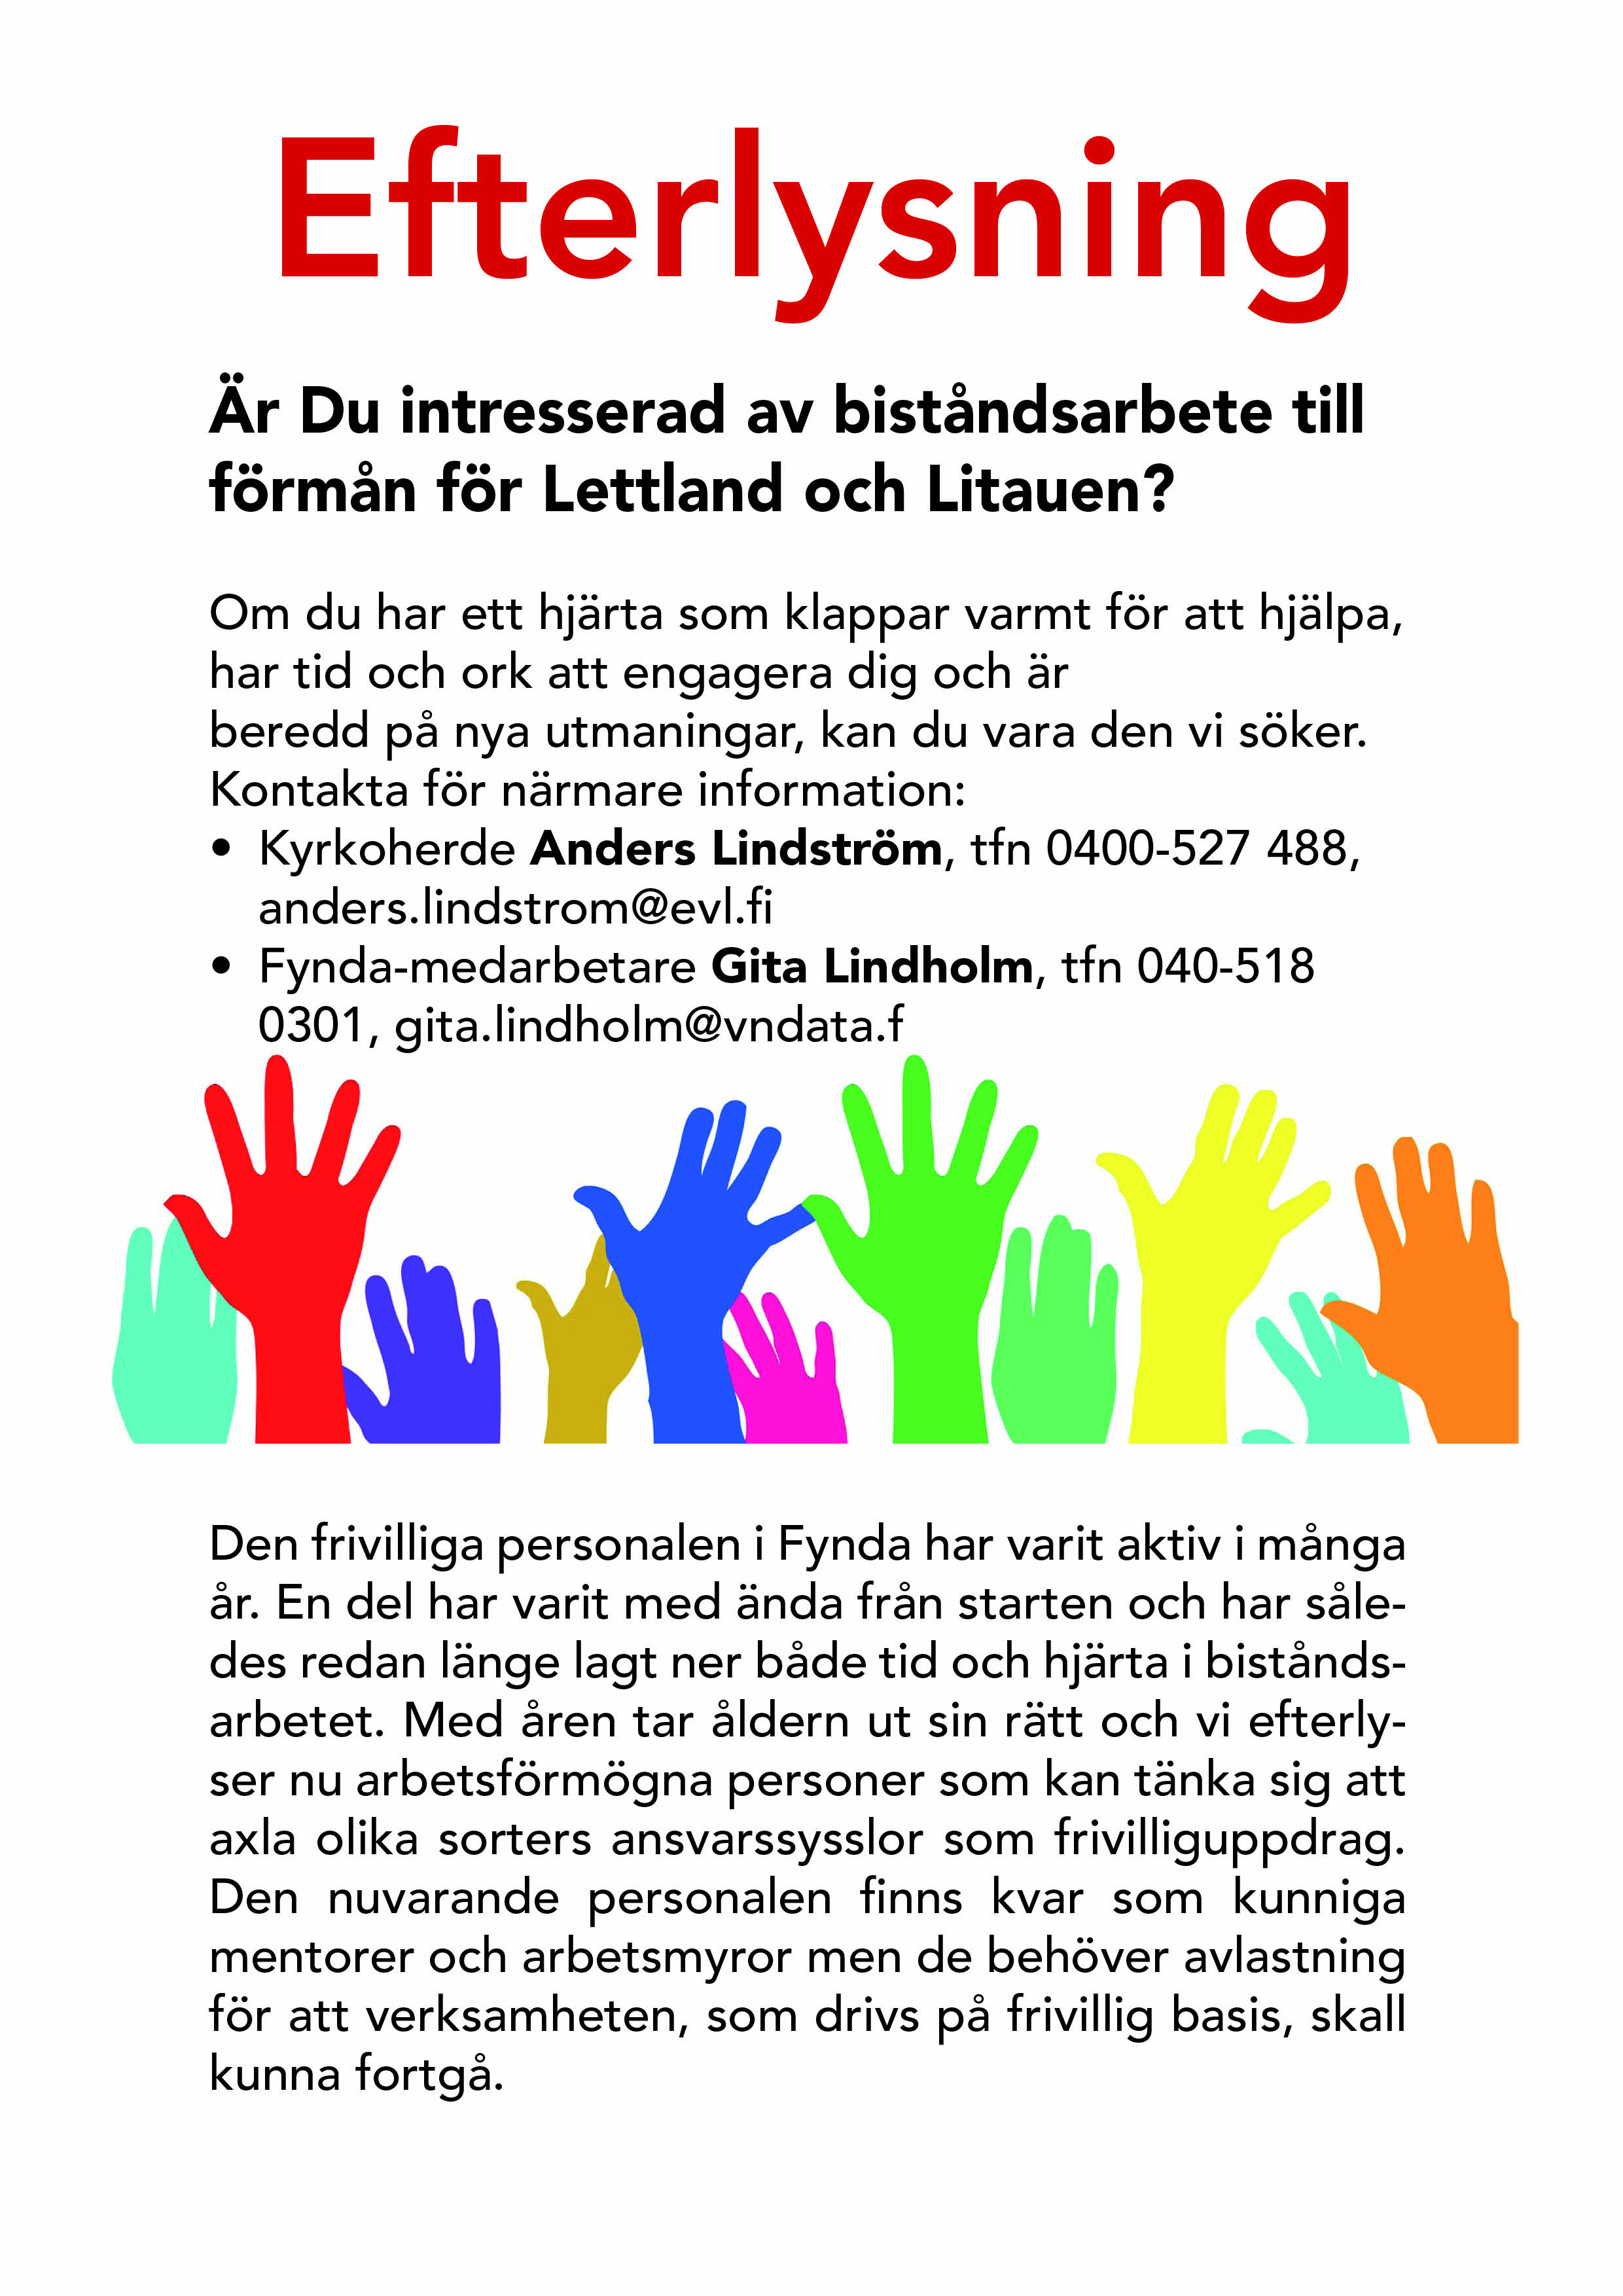 Bild av en efterlysningsaffisch med bild av många färgglada händer.